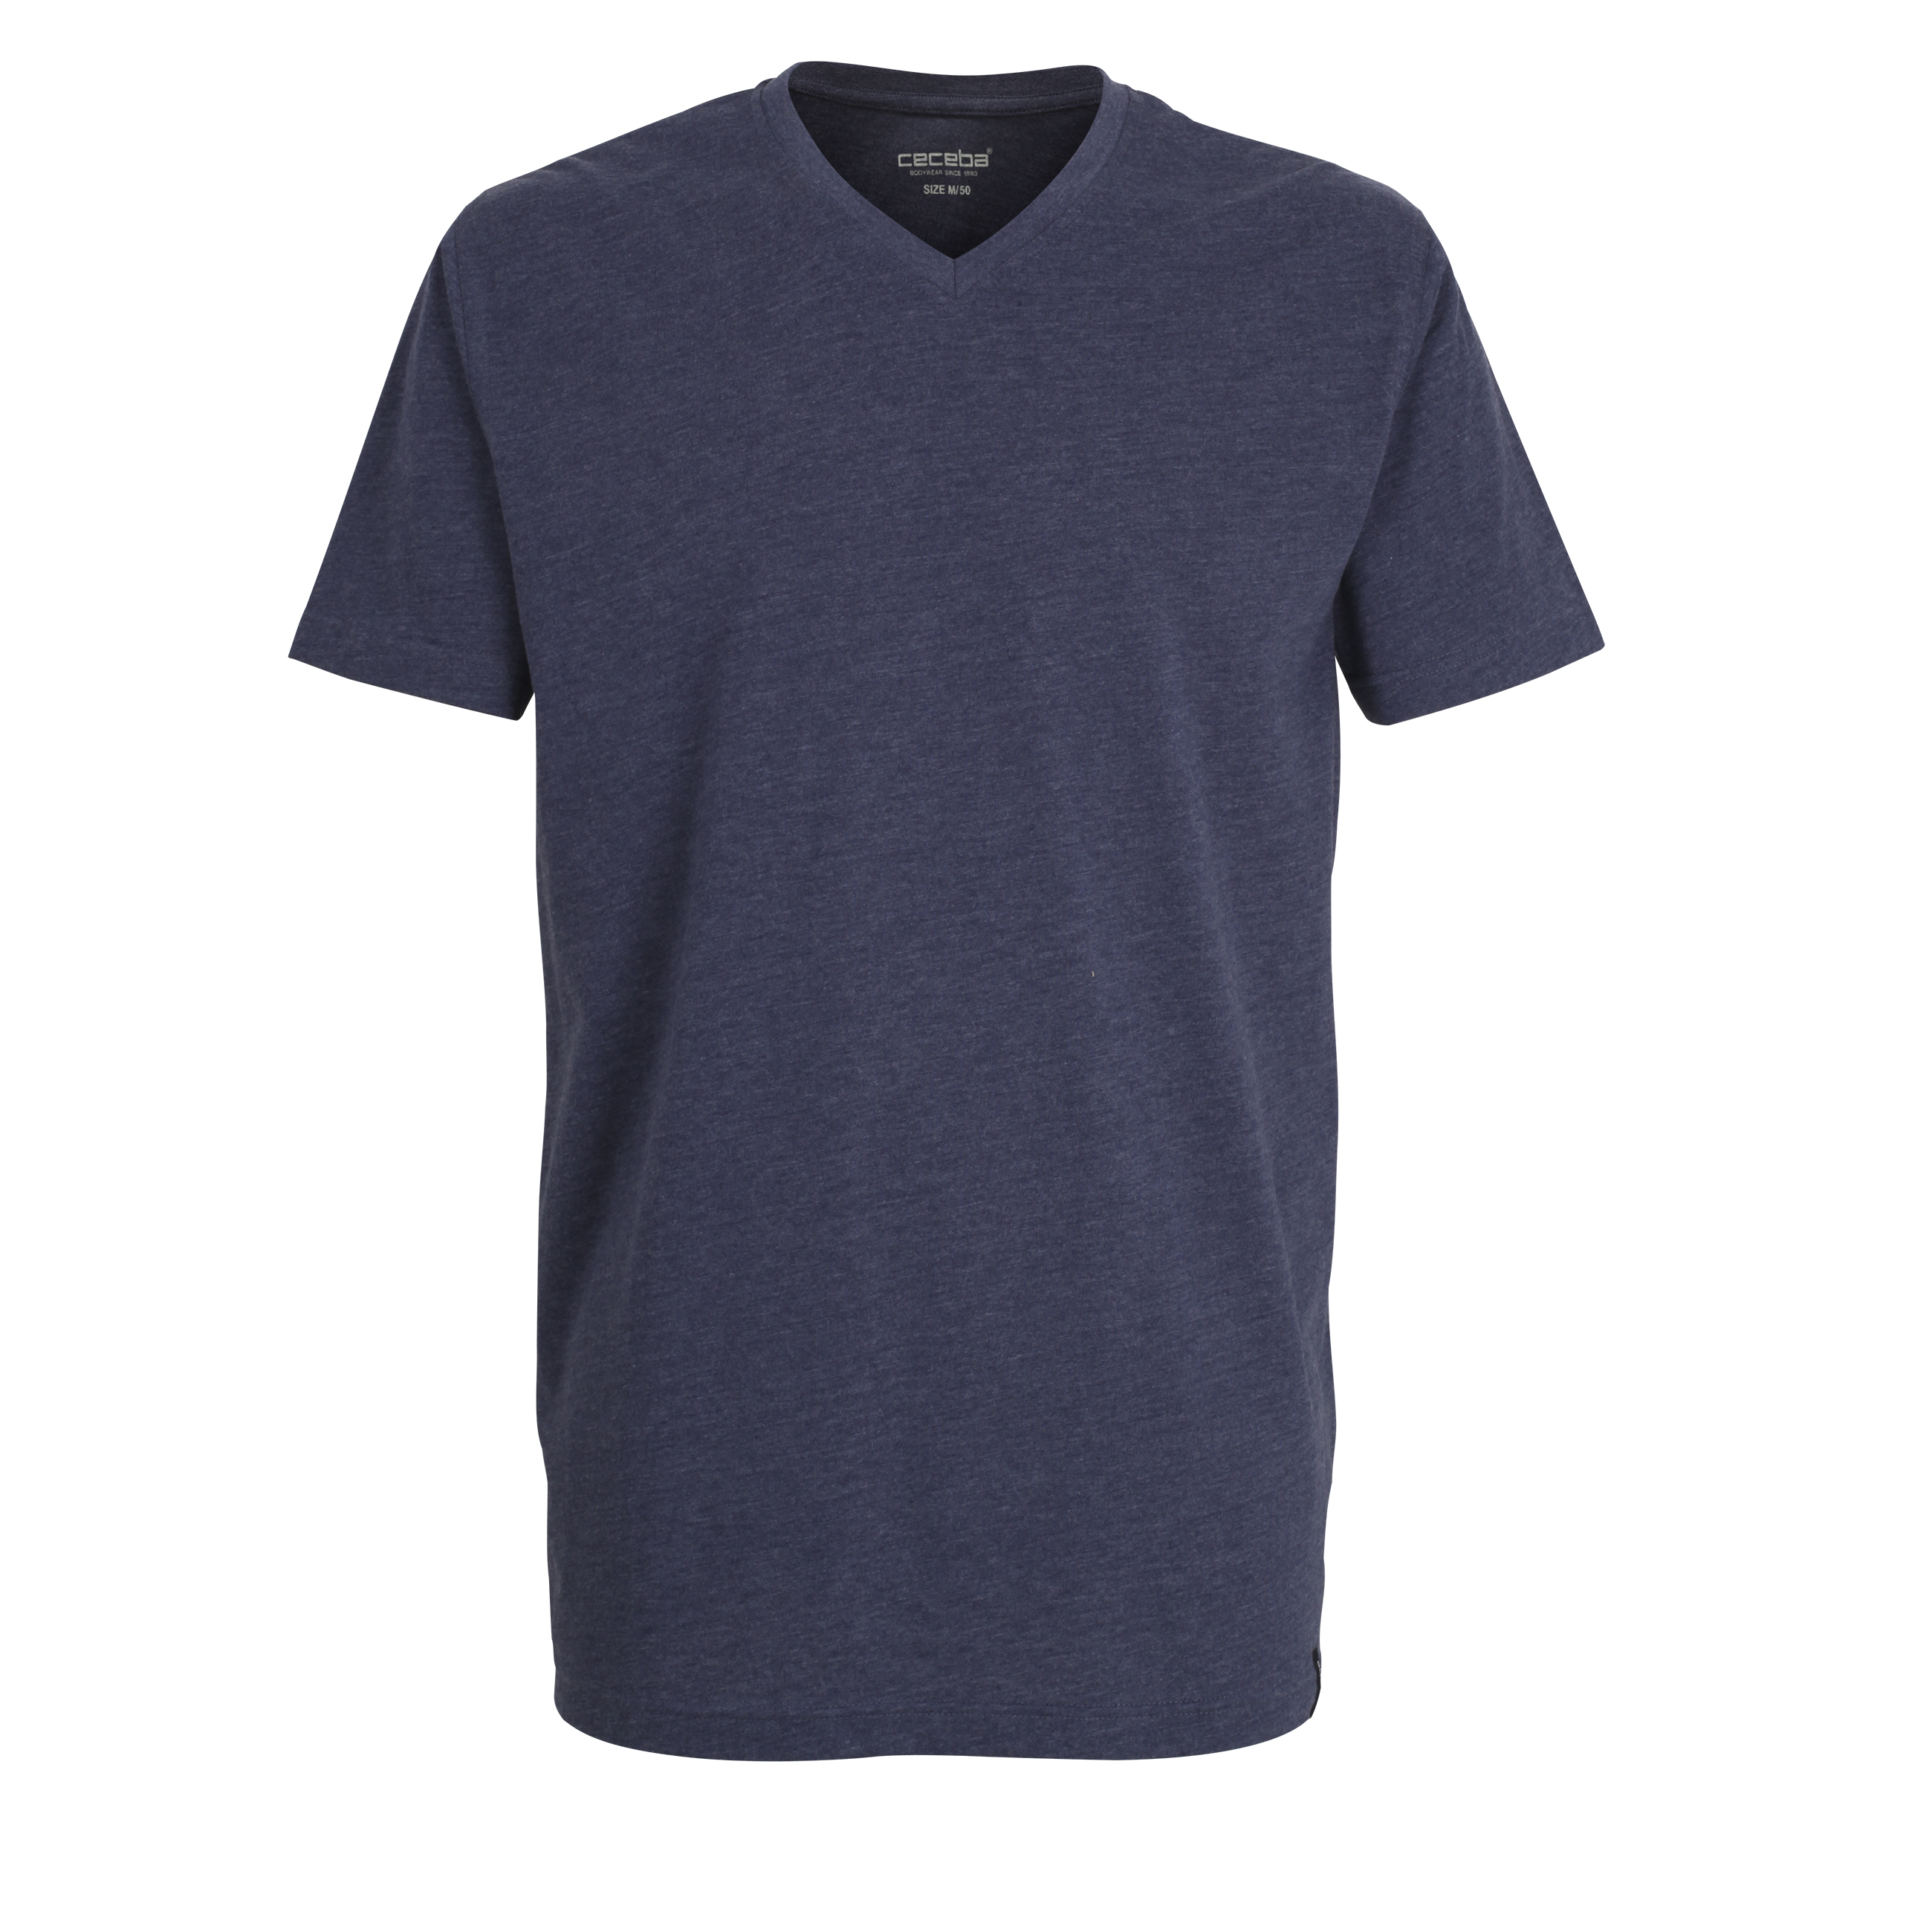 Ceceba heren T-shirt V-hals (1-pack), blauw